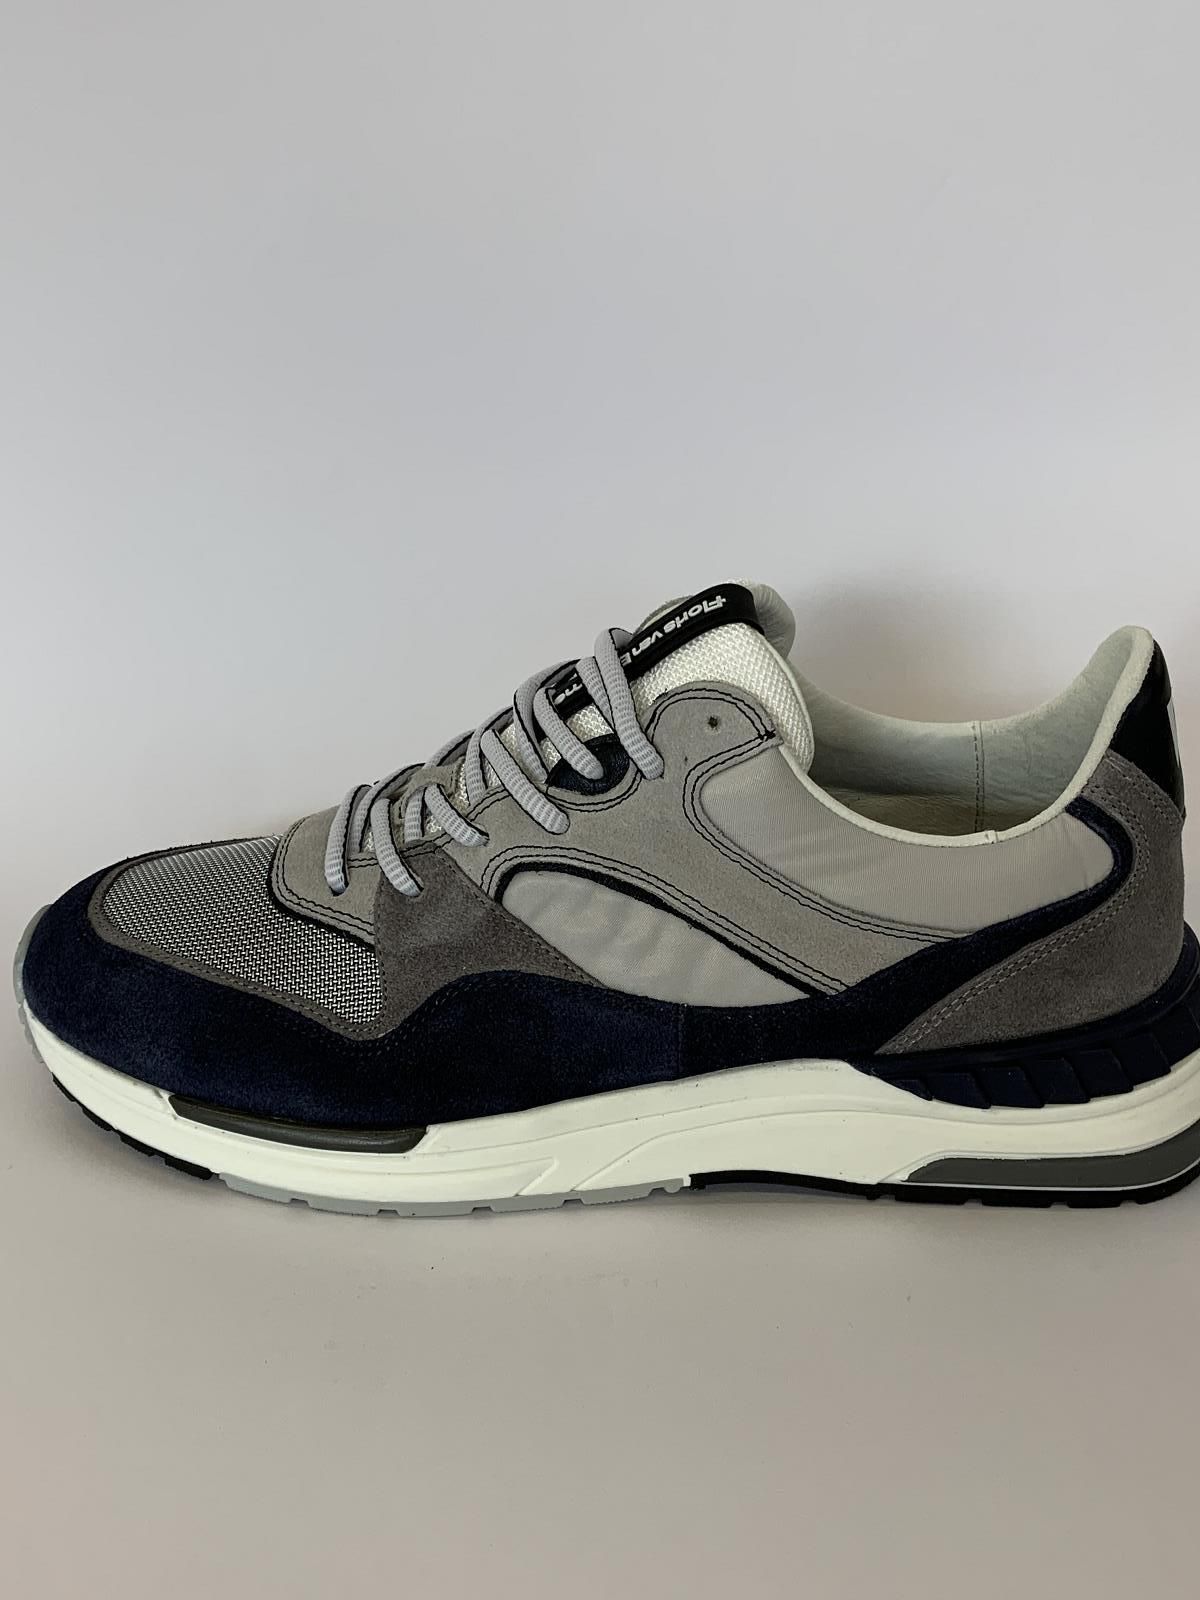 Van Bommel Sneaker Blauw+kleur heren (Sneaker Floris Bl/Gr - 10121-42-01) - Schoenen Luca